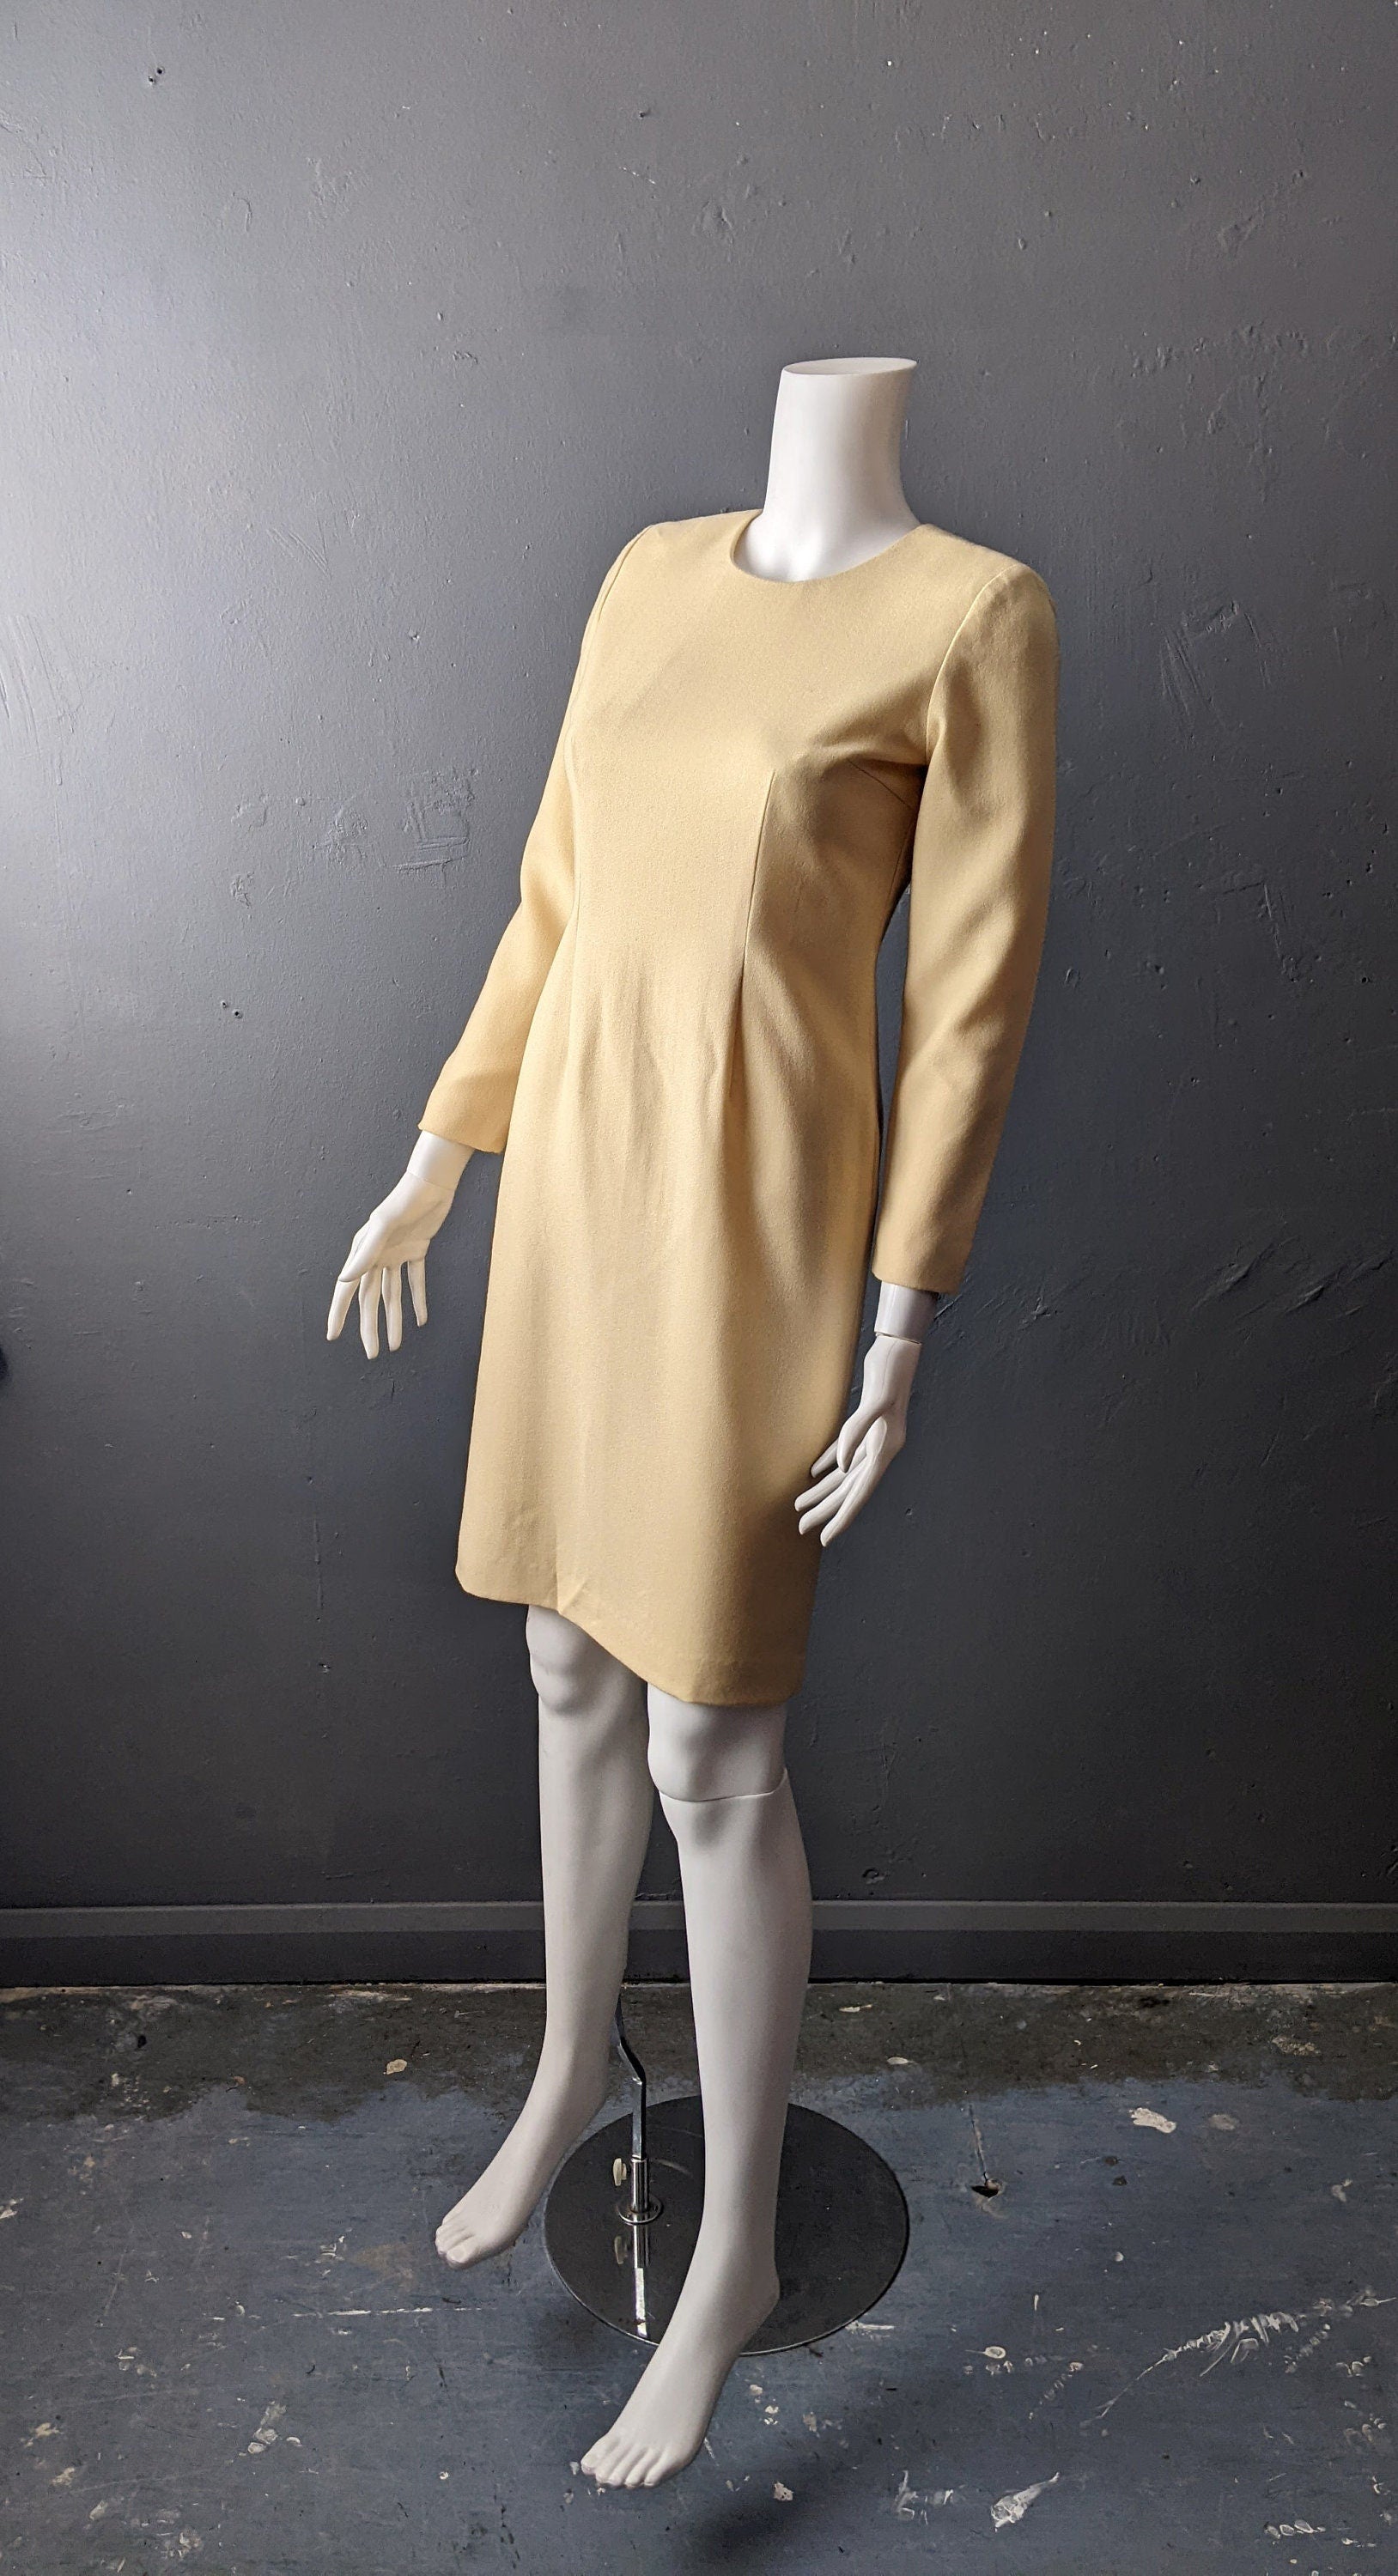 90s Wool Crepe Sheath Dress, Minimalist Eveningwear, Size Small